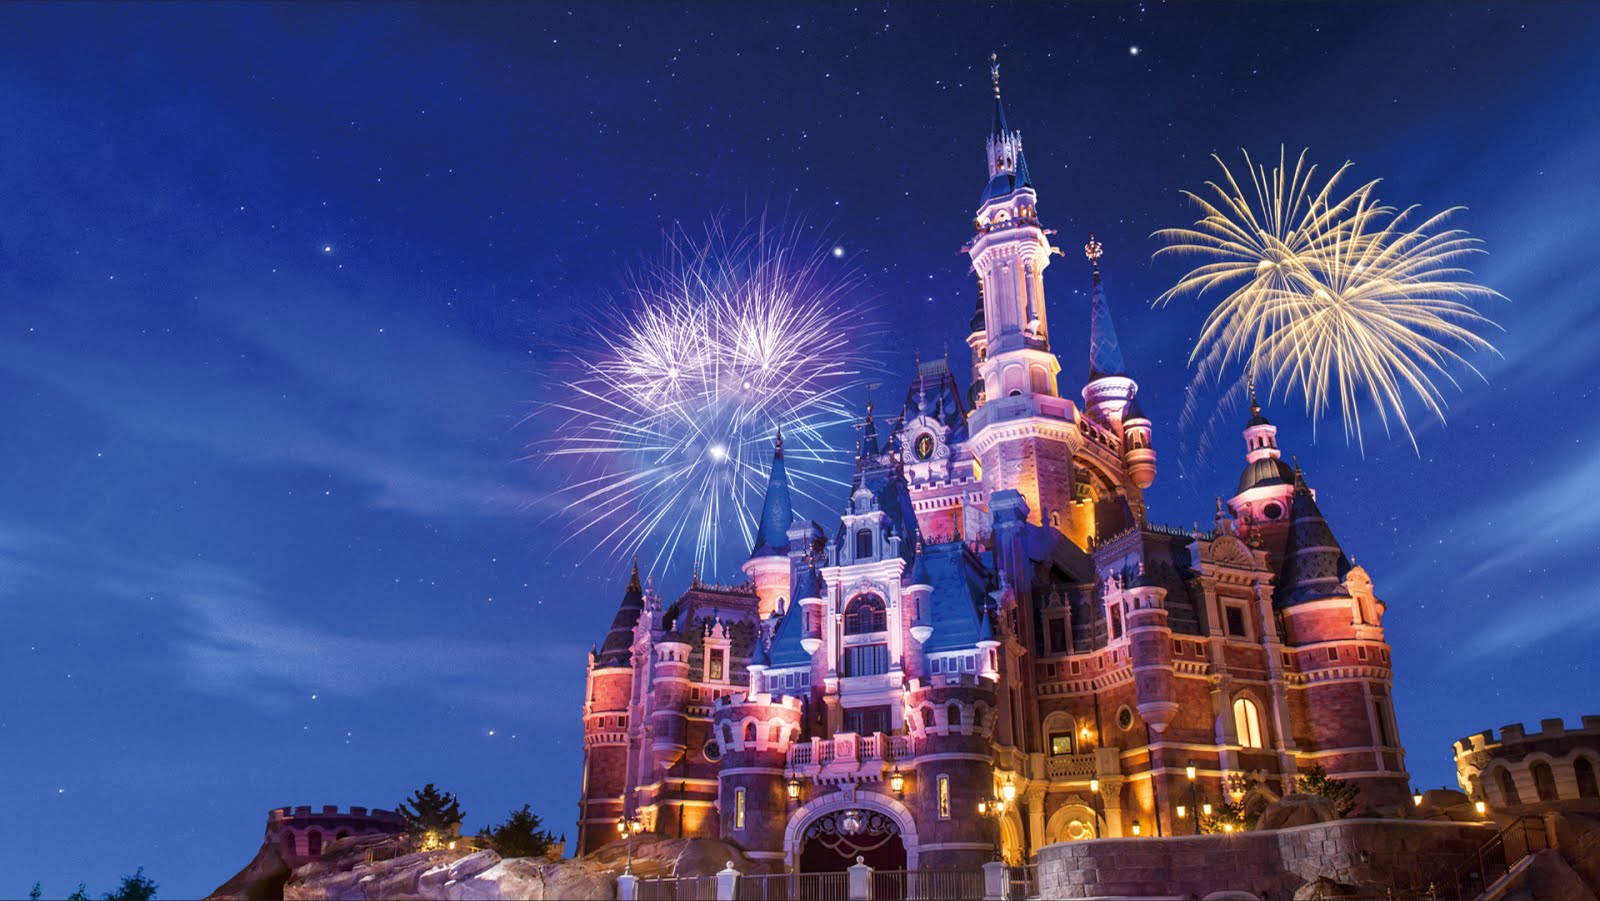 Monday, June 13, - Công Viên Disneyland Ở Thượng Hải - 1600x901 Wallpaper -  